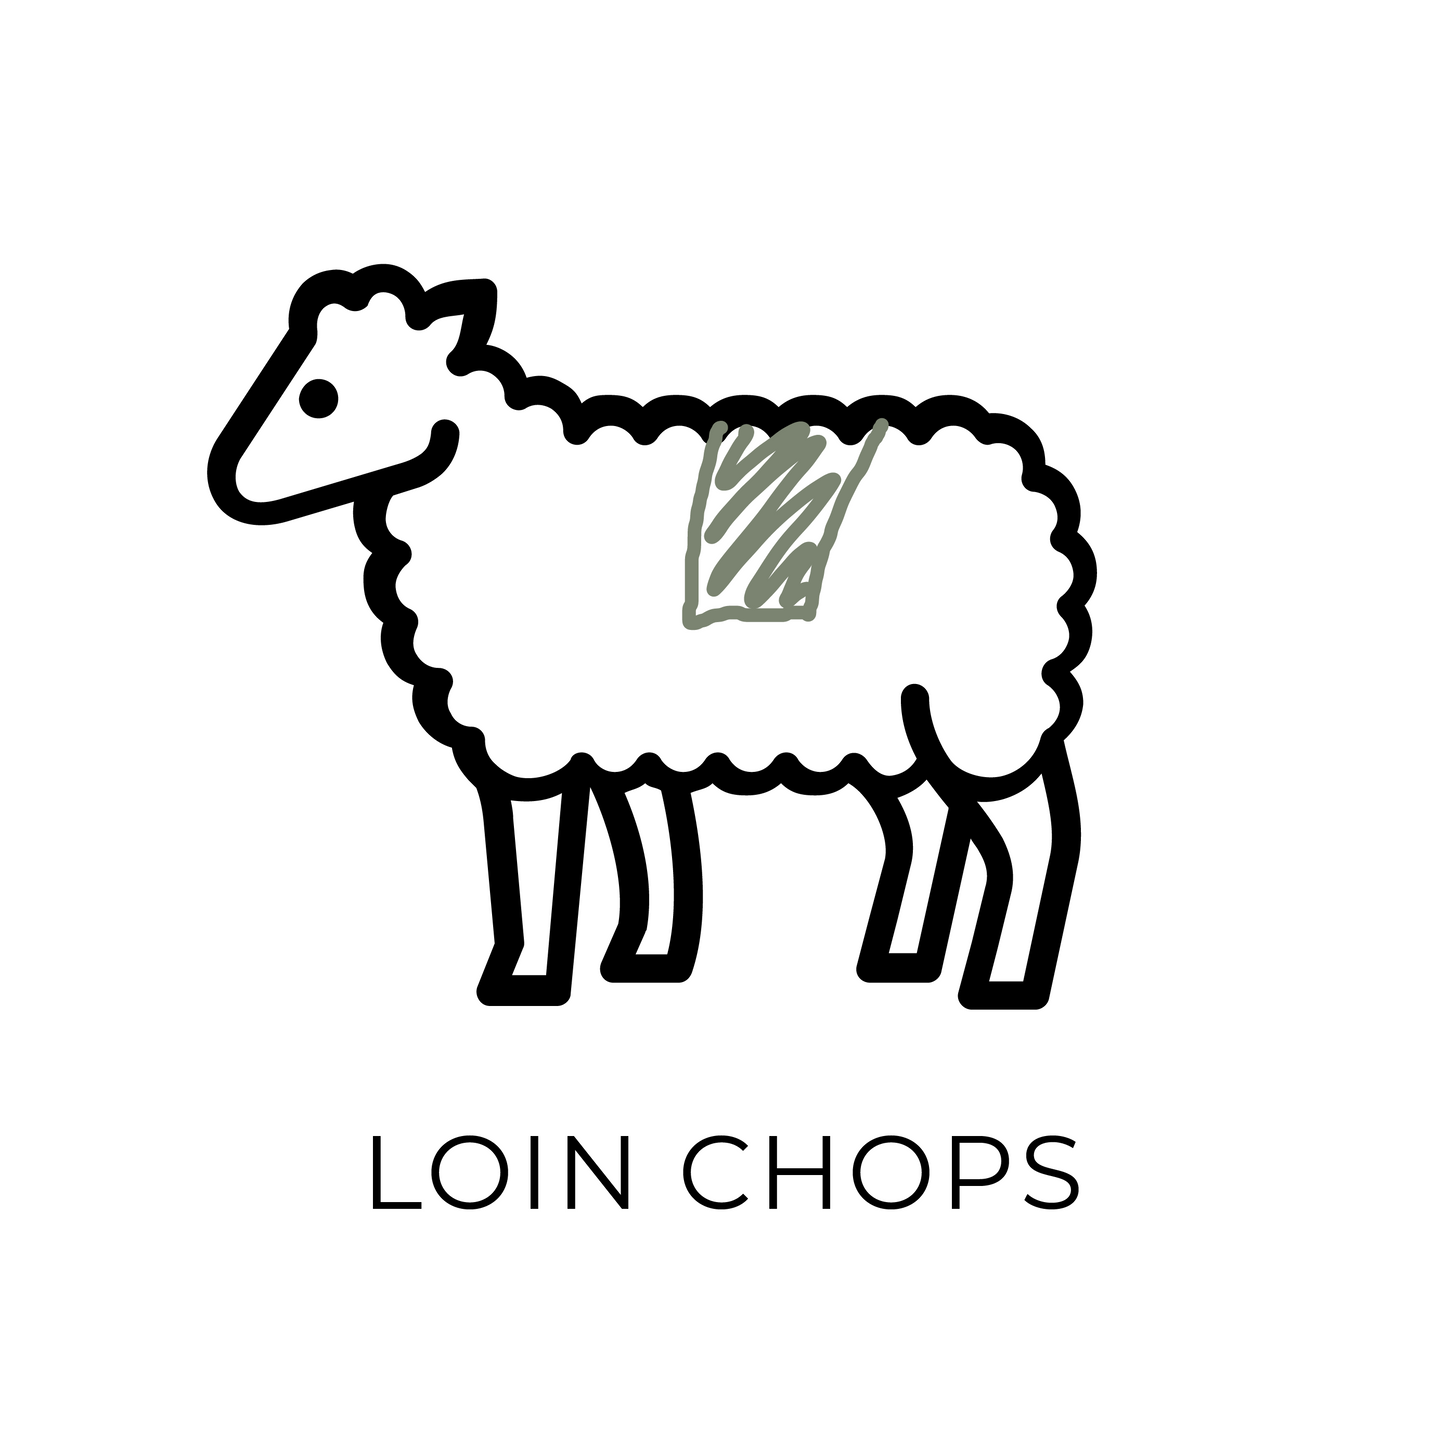 Lamb Chops, Loin